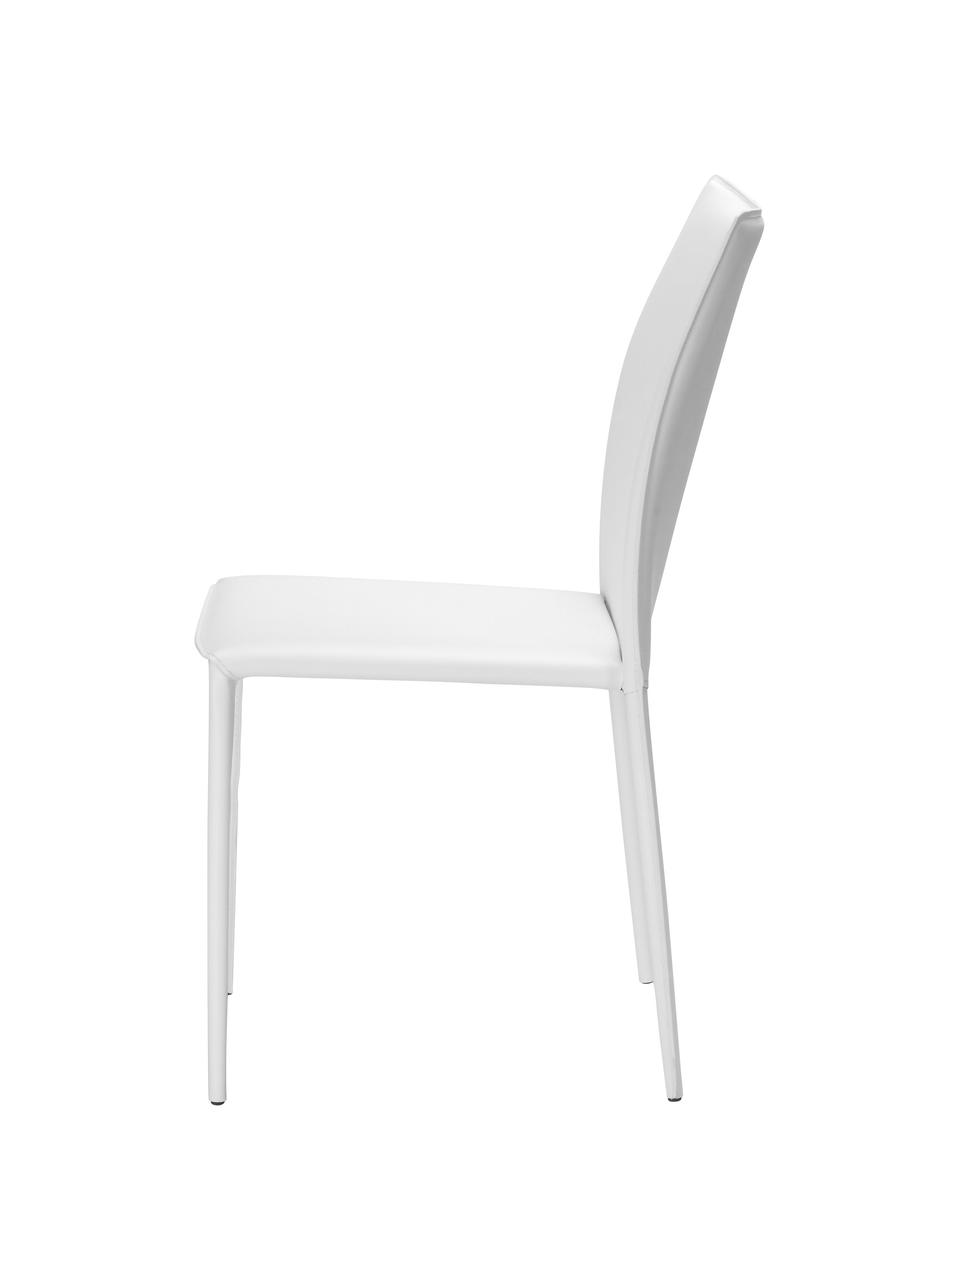 Leren stoelen Soléne, 2 stuks, Zitvlak: gerecycled leer, Frame: metaal bekleed met gerecy, Wit, B 48 x D 60 cm